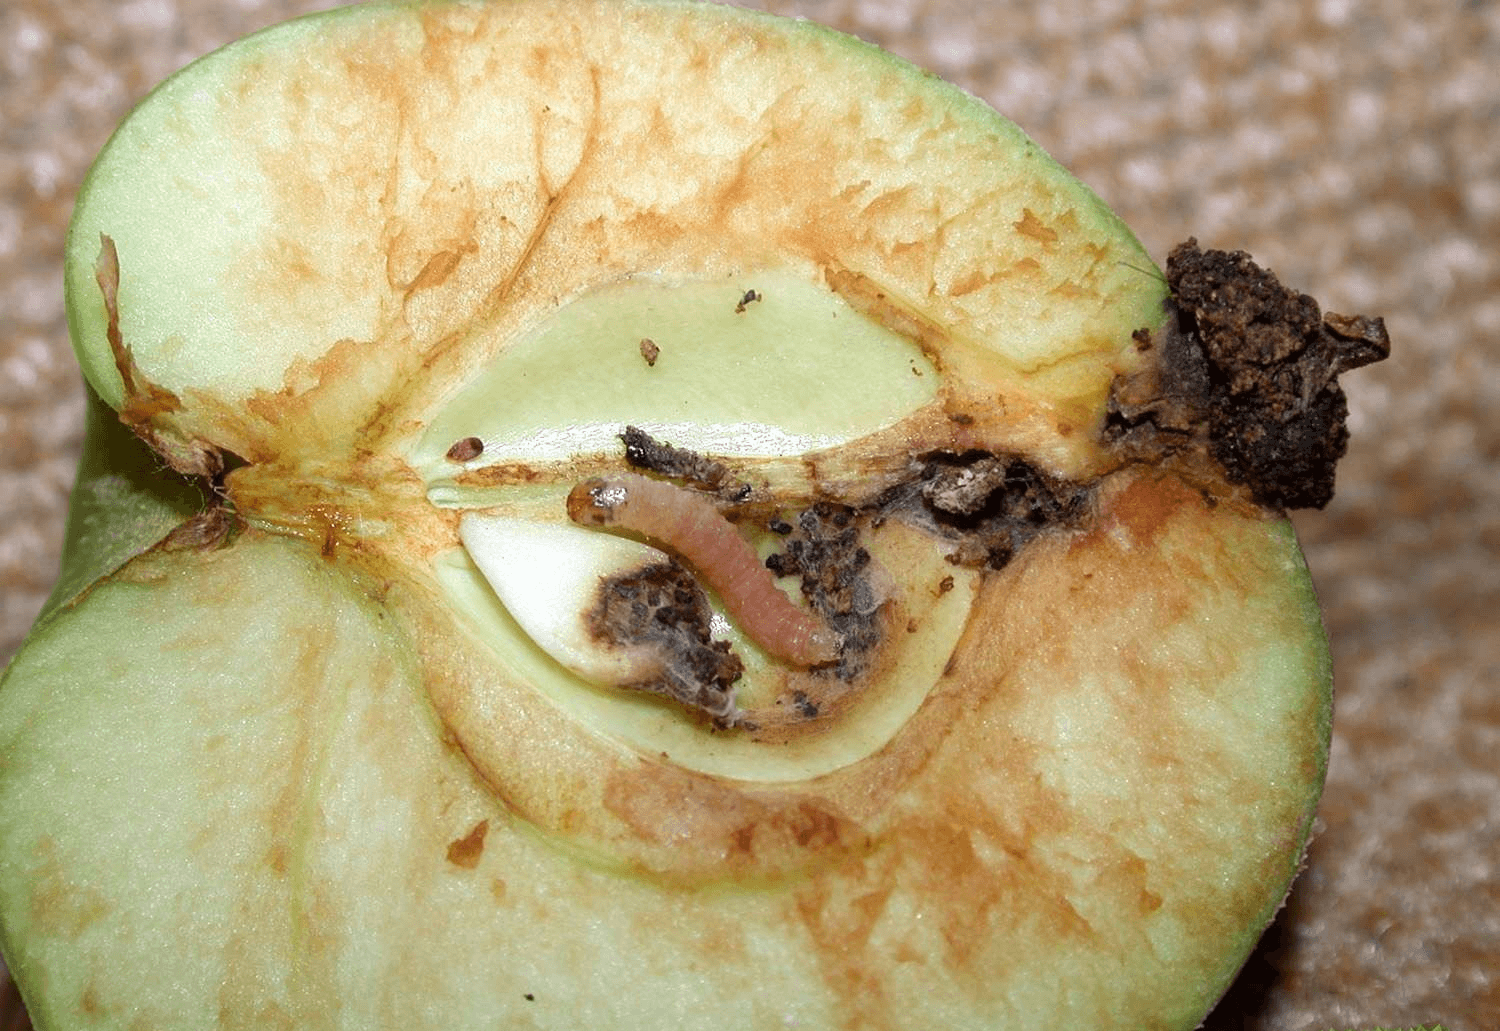 Как должна выполняться обработка яблонь осенью от вредителей и болезней?